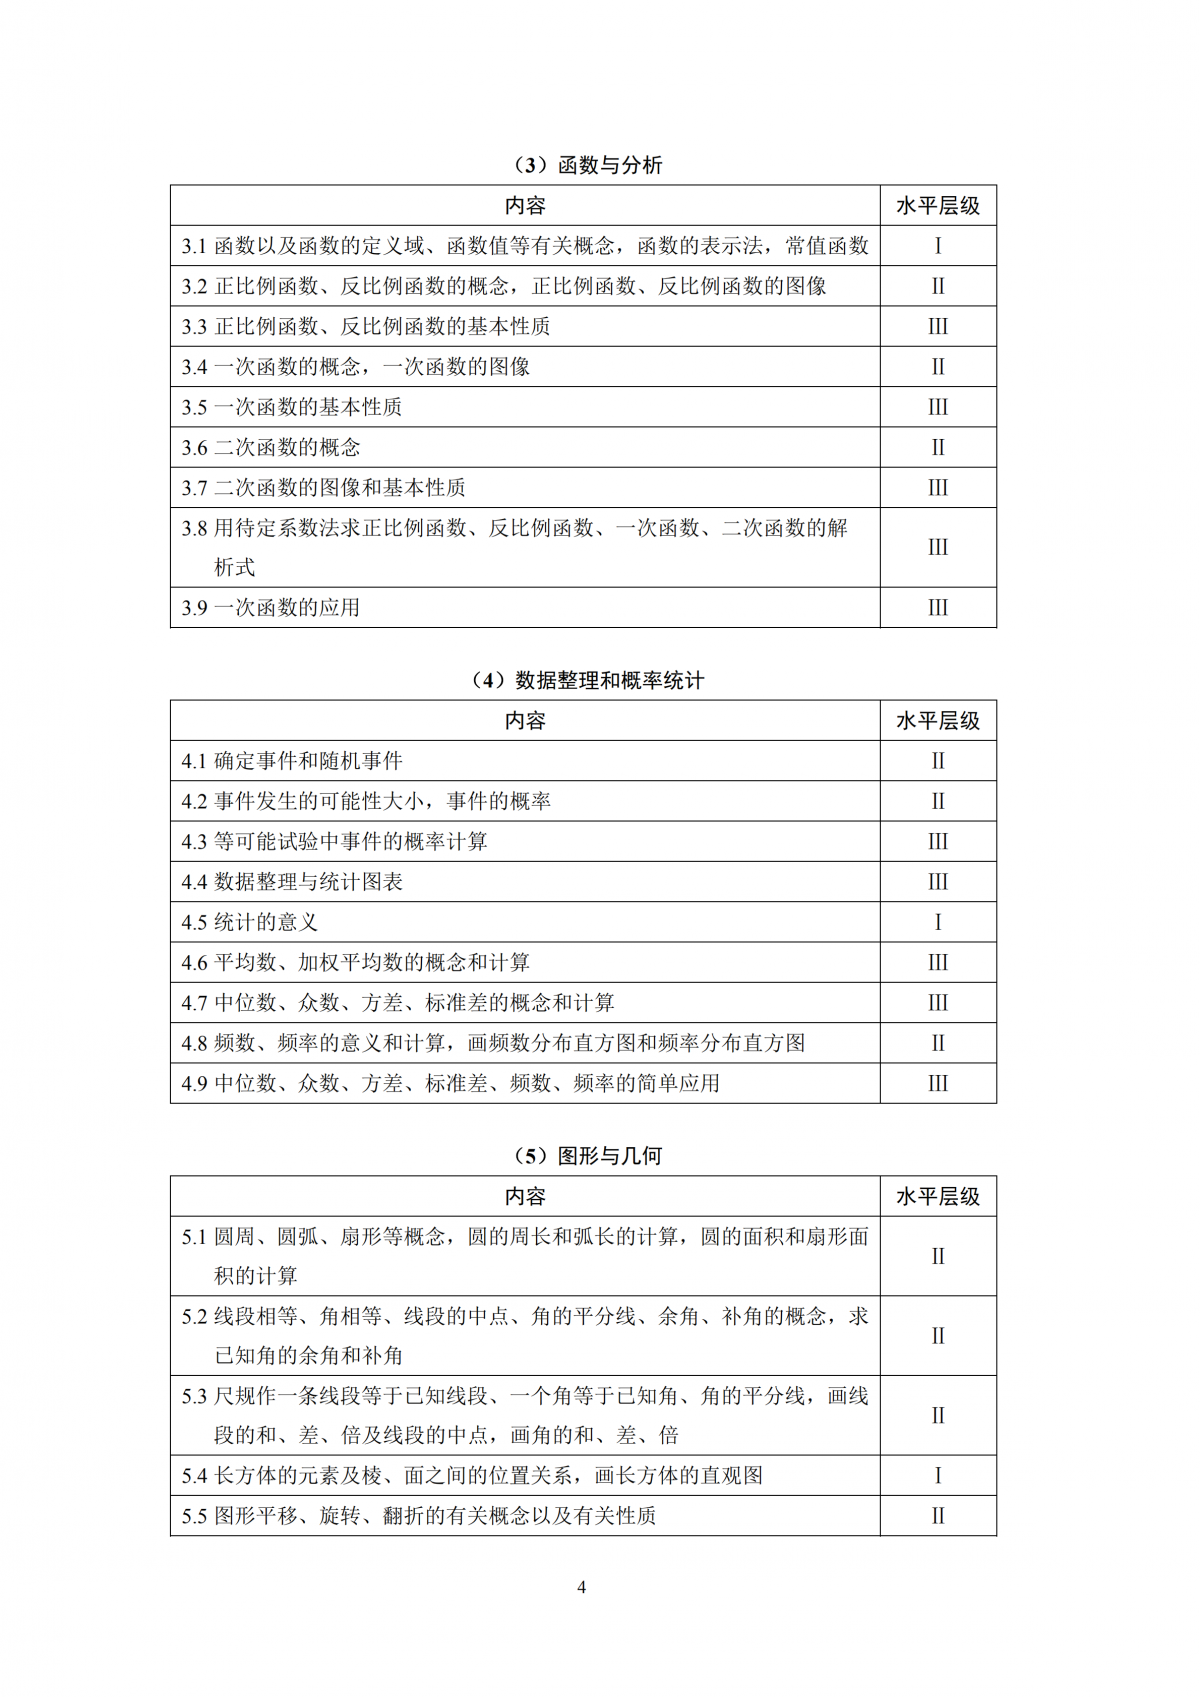 2020年上海市初中数学课程终结性评价指南 思源教育